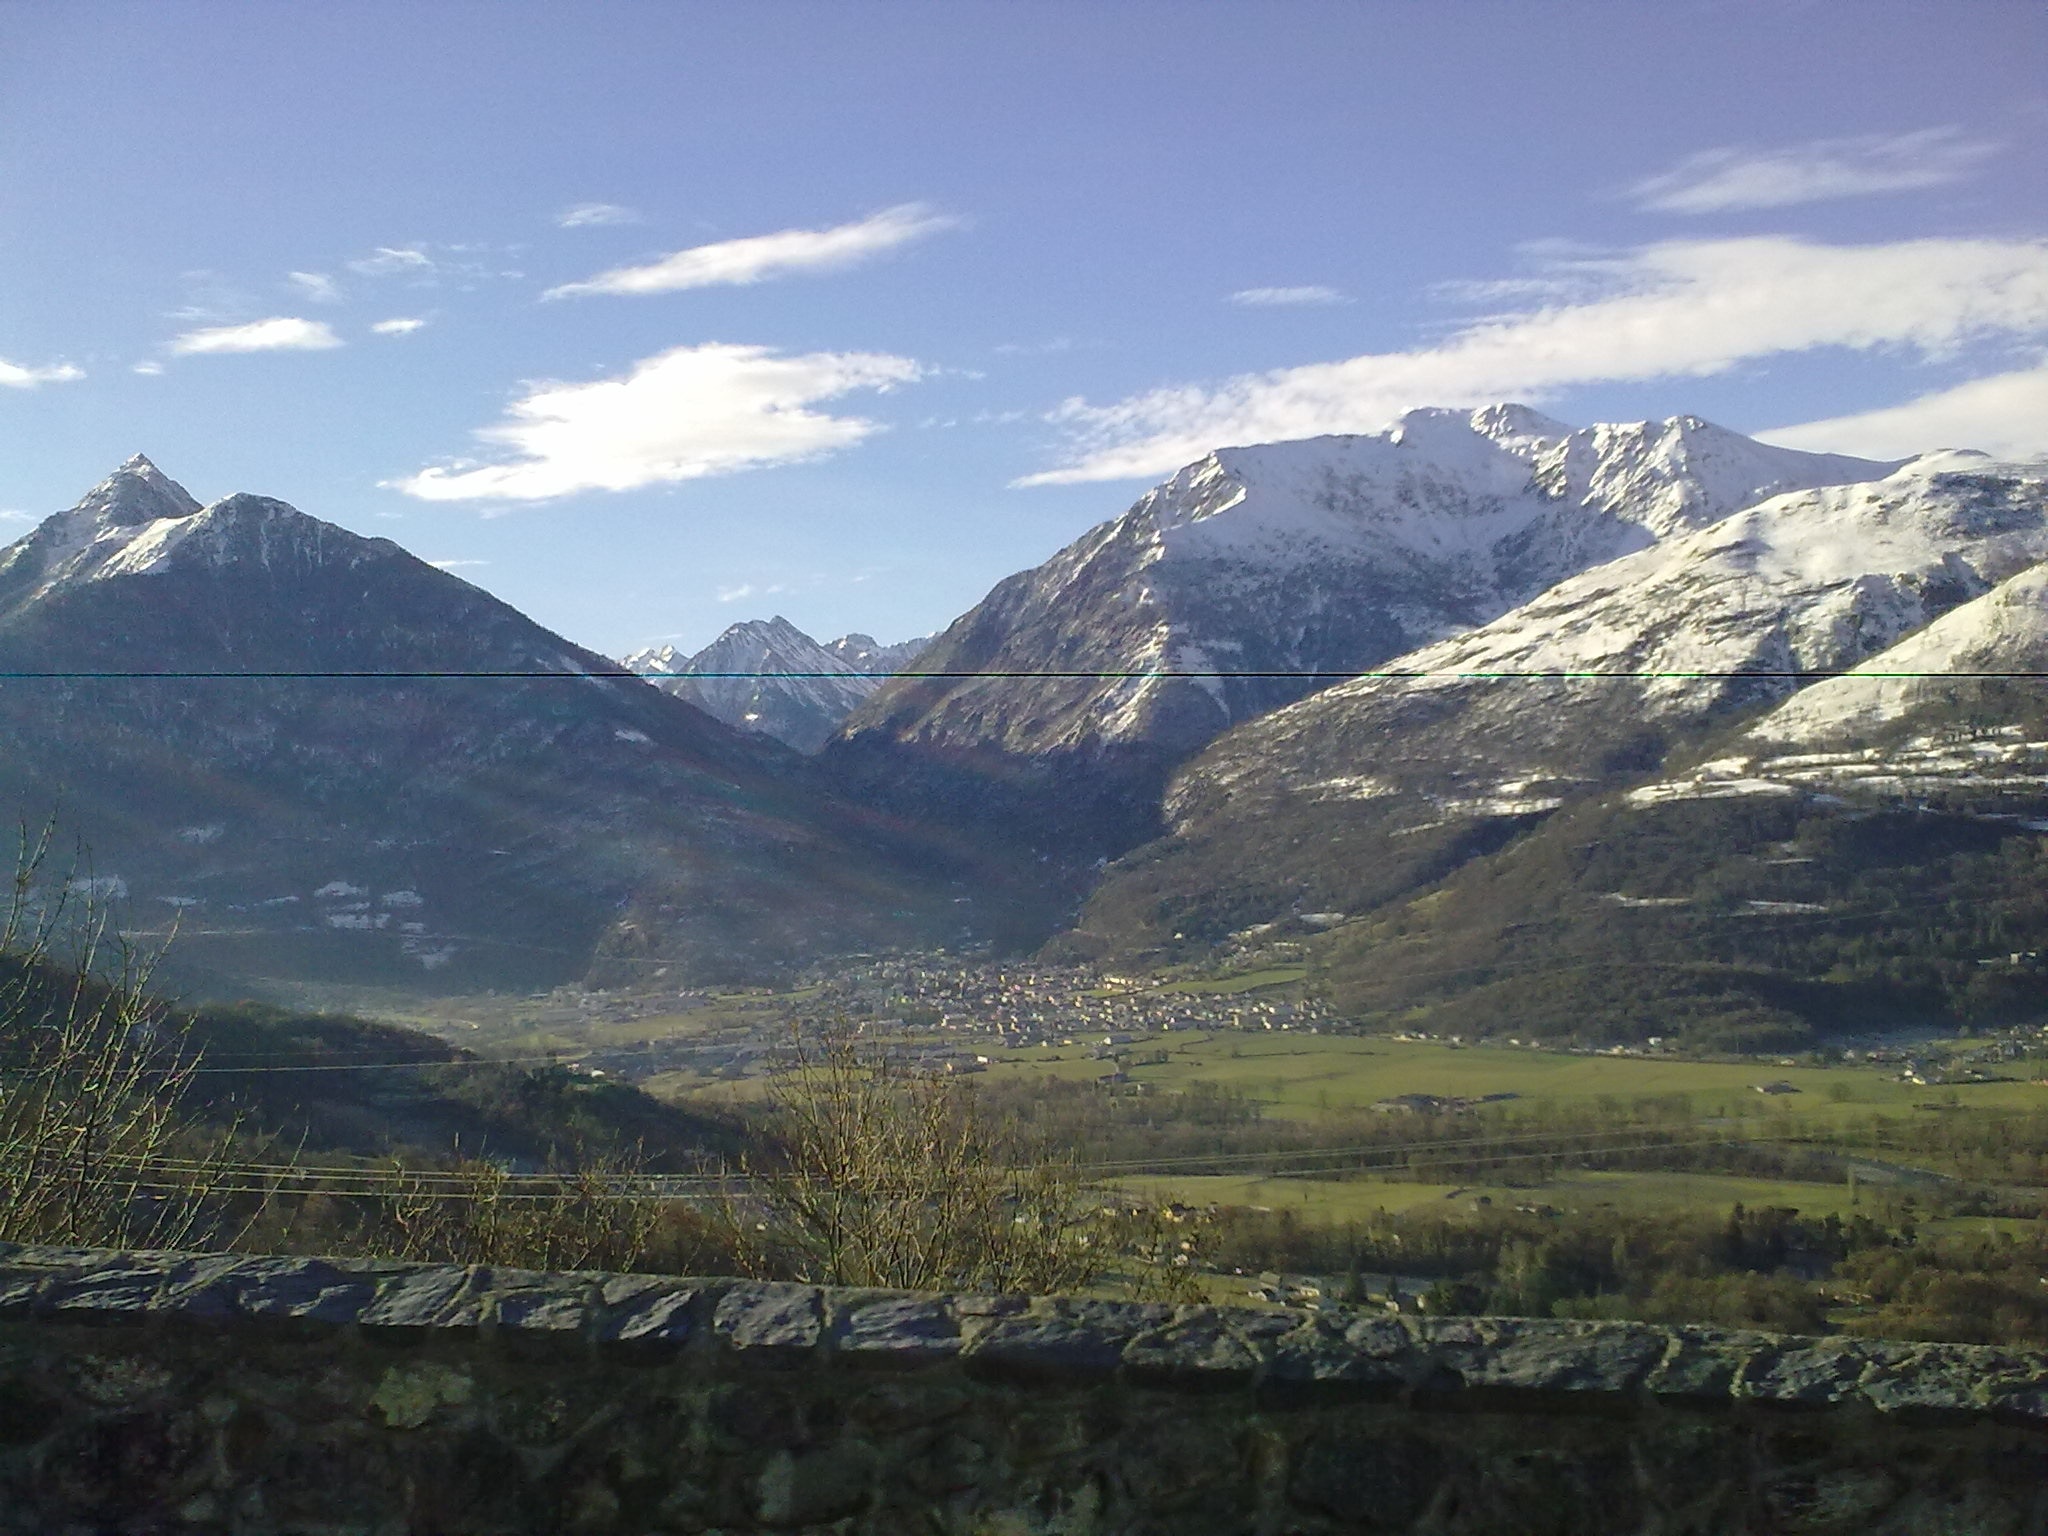 Artalens-Souin, Hautes-Pyrénées, France